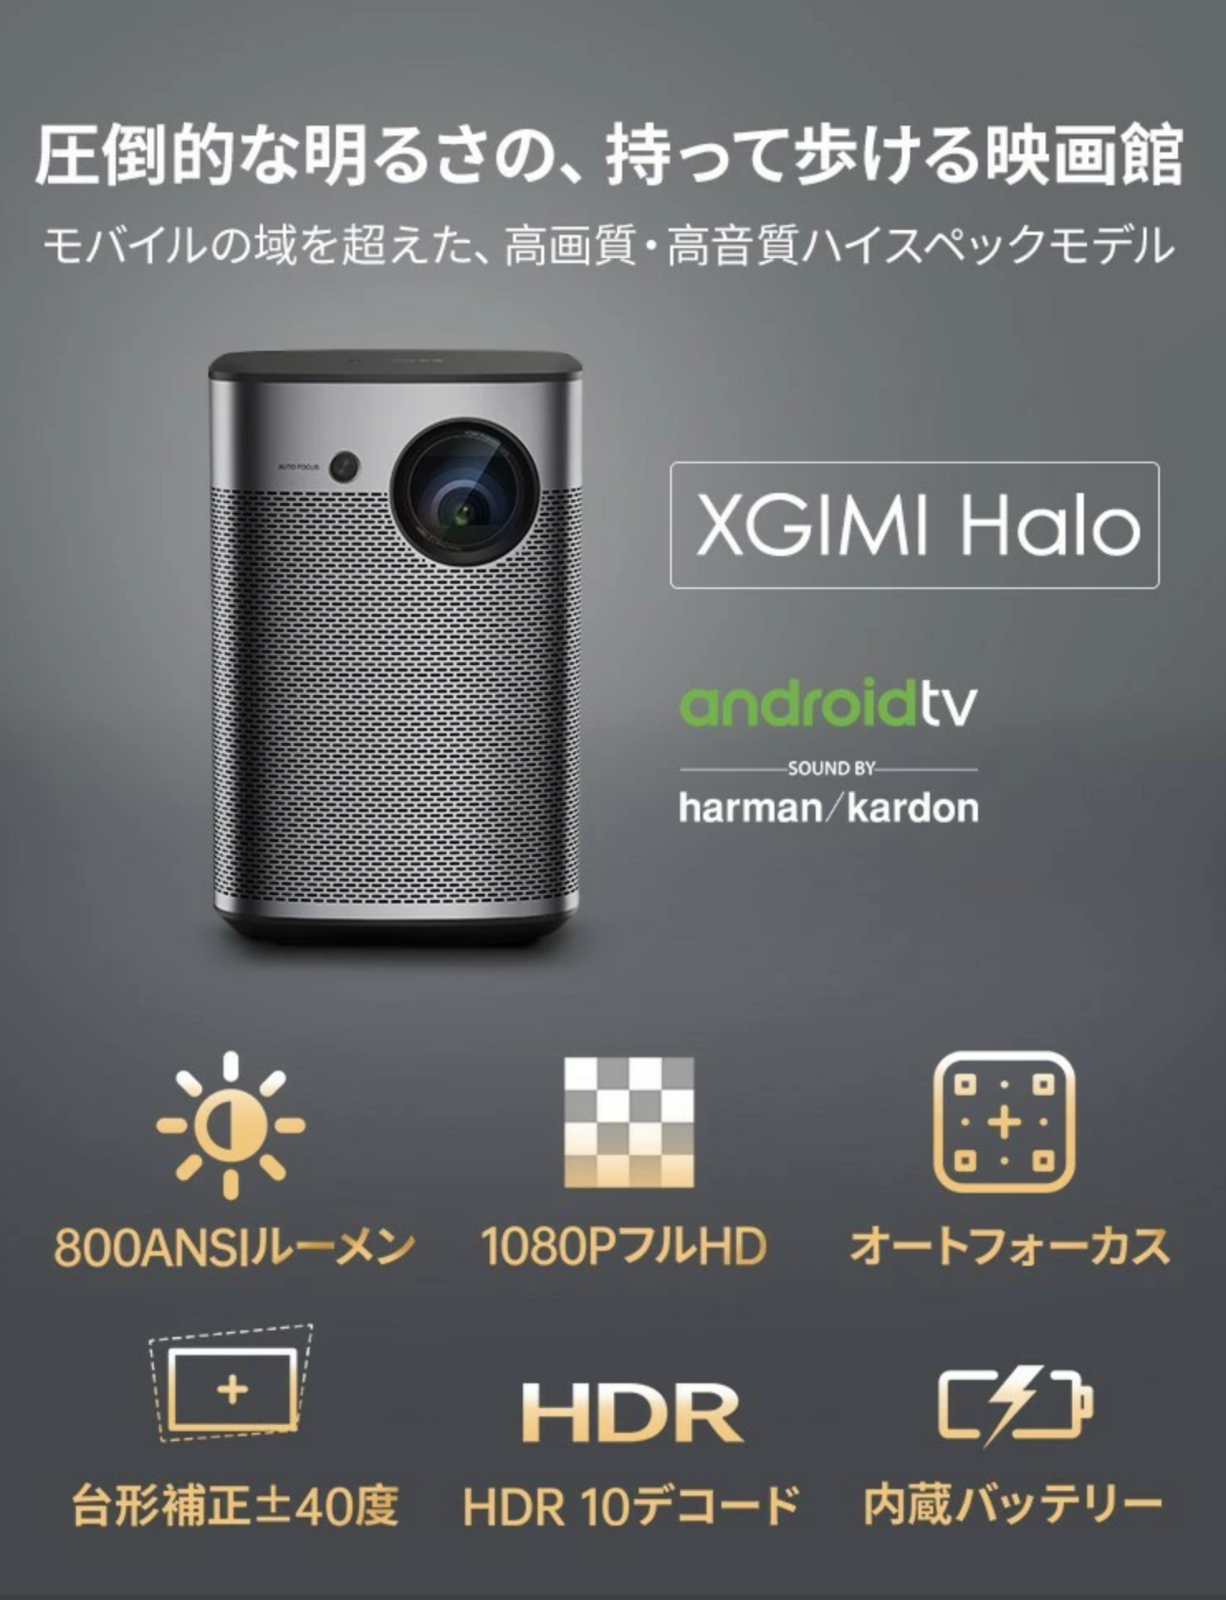 お買い得お得モバイルプロジェクター 高輝度 800ANSI ルーメン フルHD 1080p Android TV 9.0搭載 オートフォーカス bluetooth対応 XGIMI Halo 本体